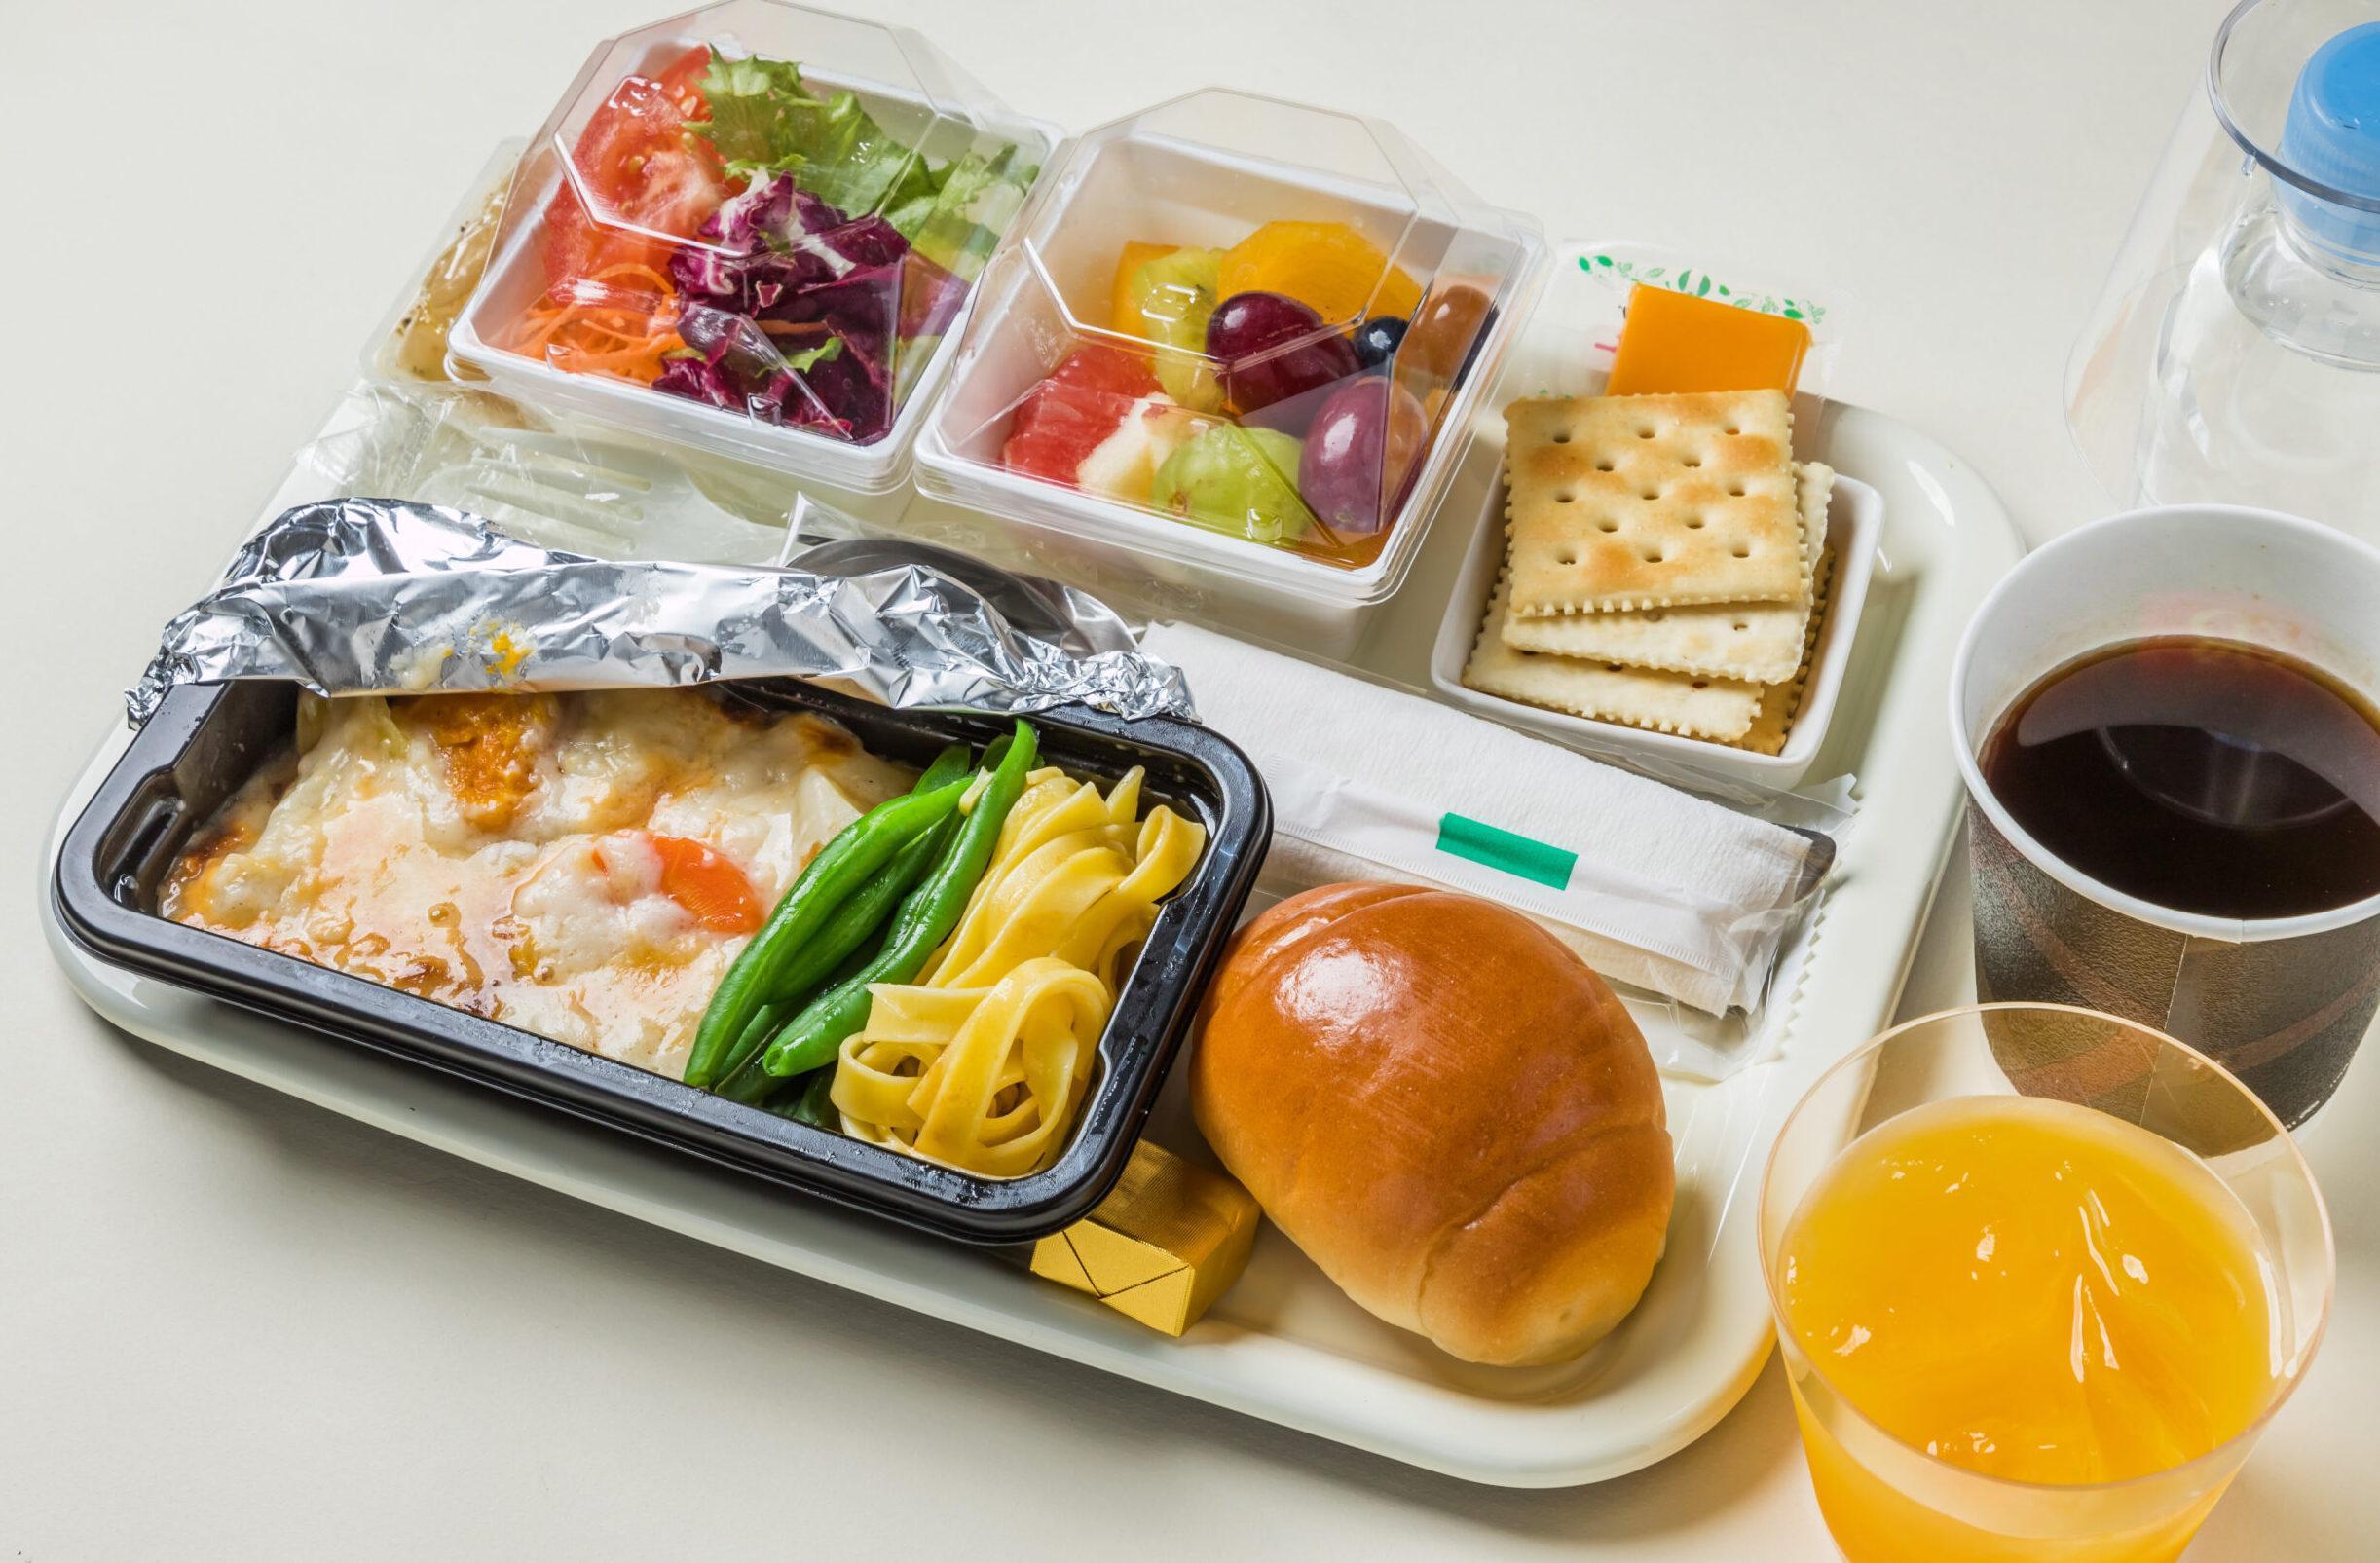 اطلاعاتی جالب راجع به غذای هواپیماها و نباید های غذایی در پرواز 